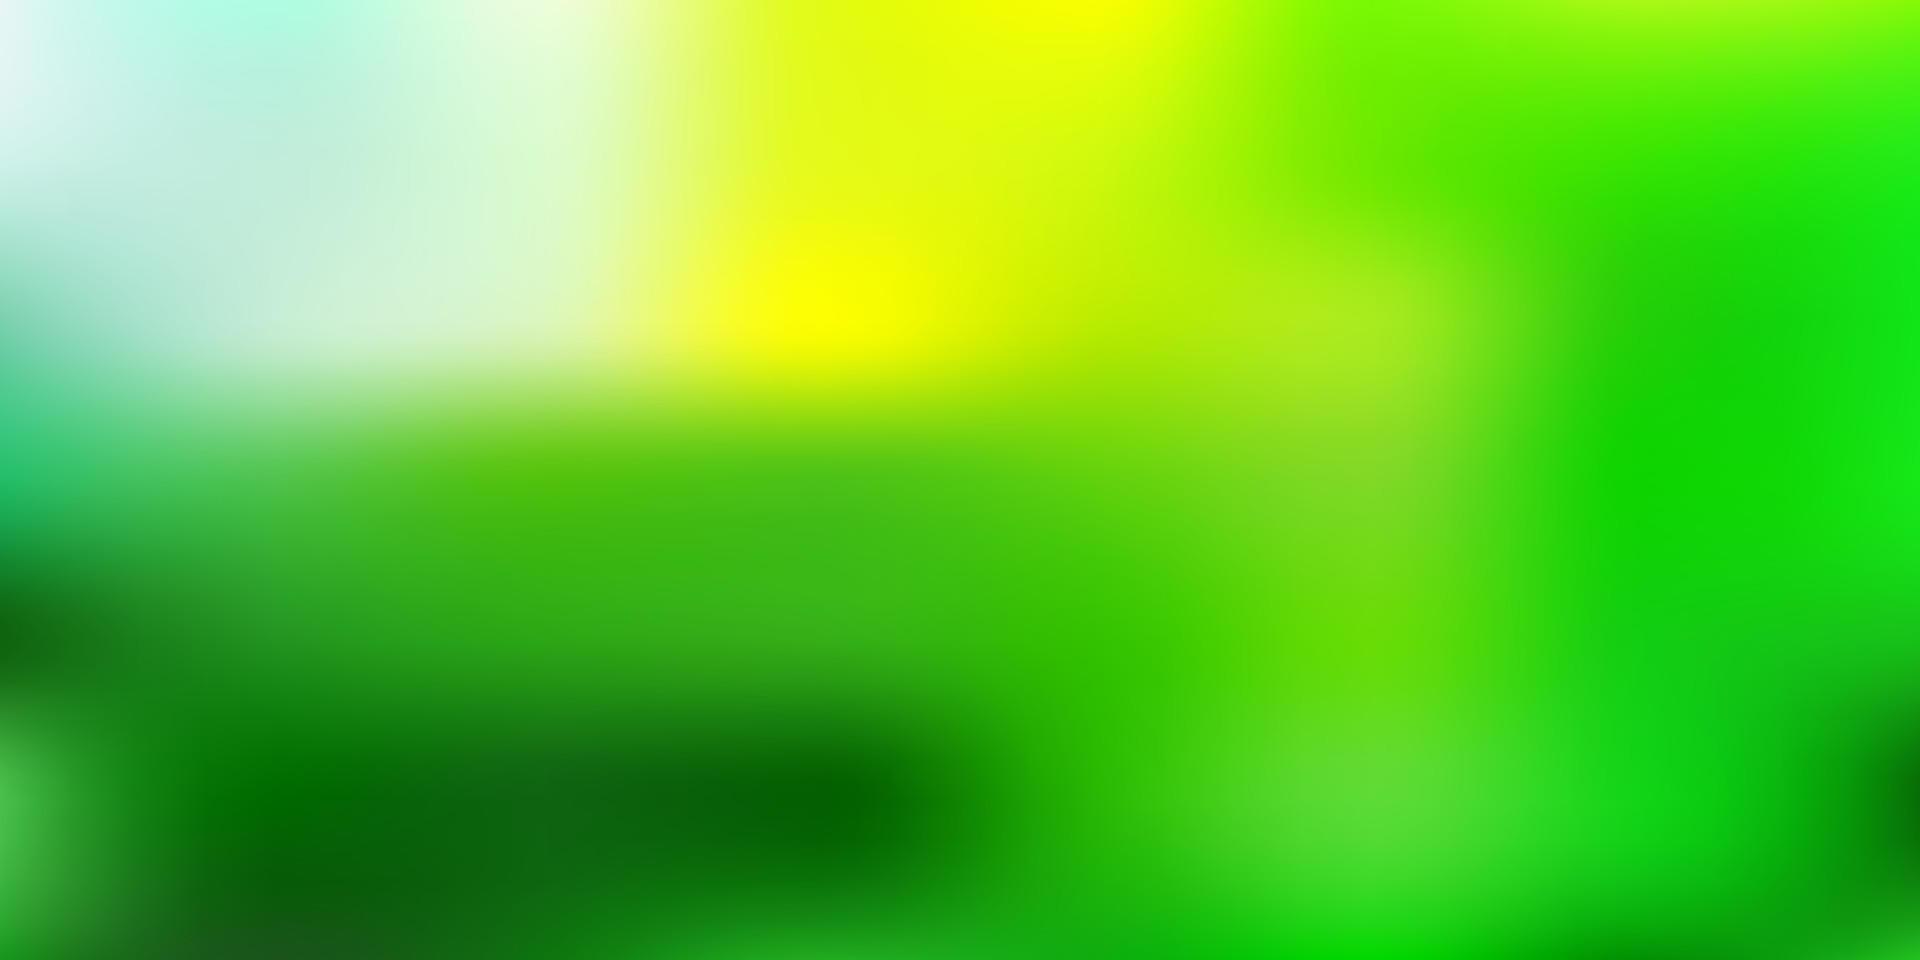 ljusgrön, gul vektor abstrakt oskärpa bakgrund.